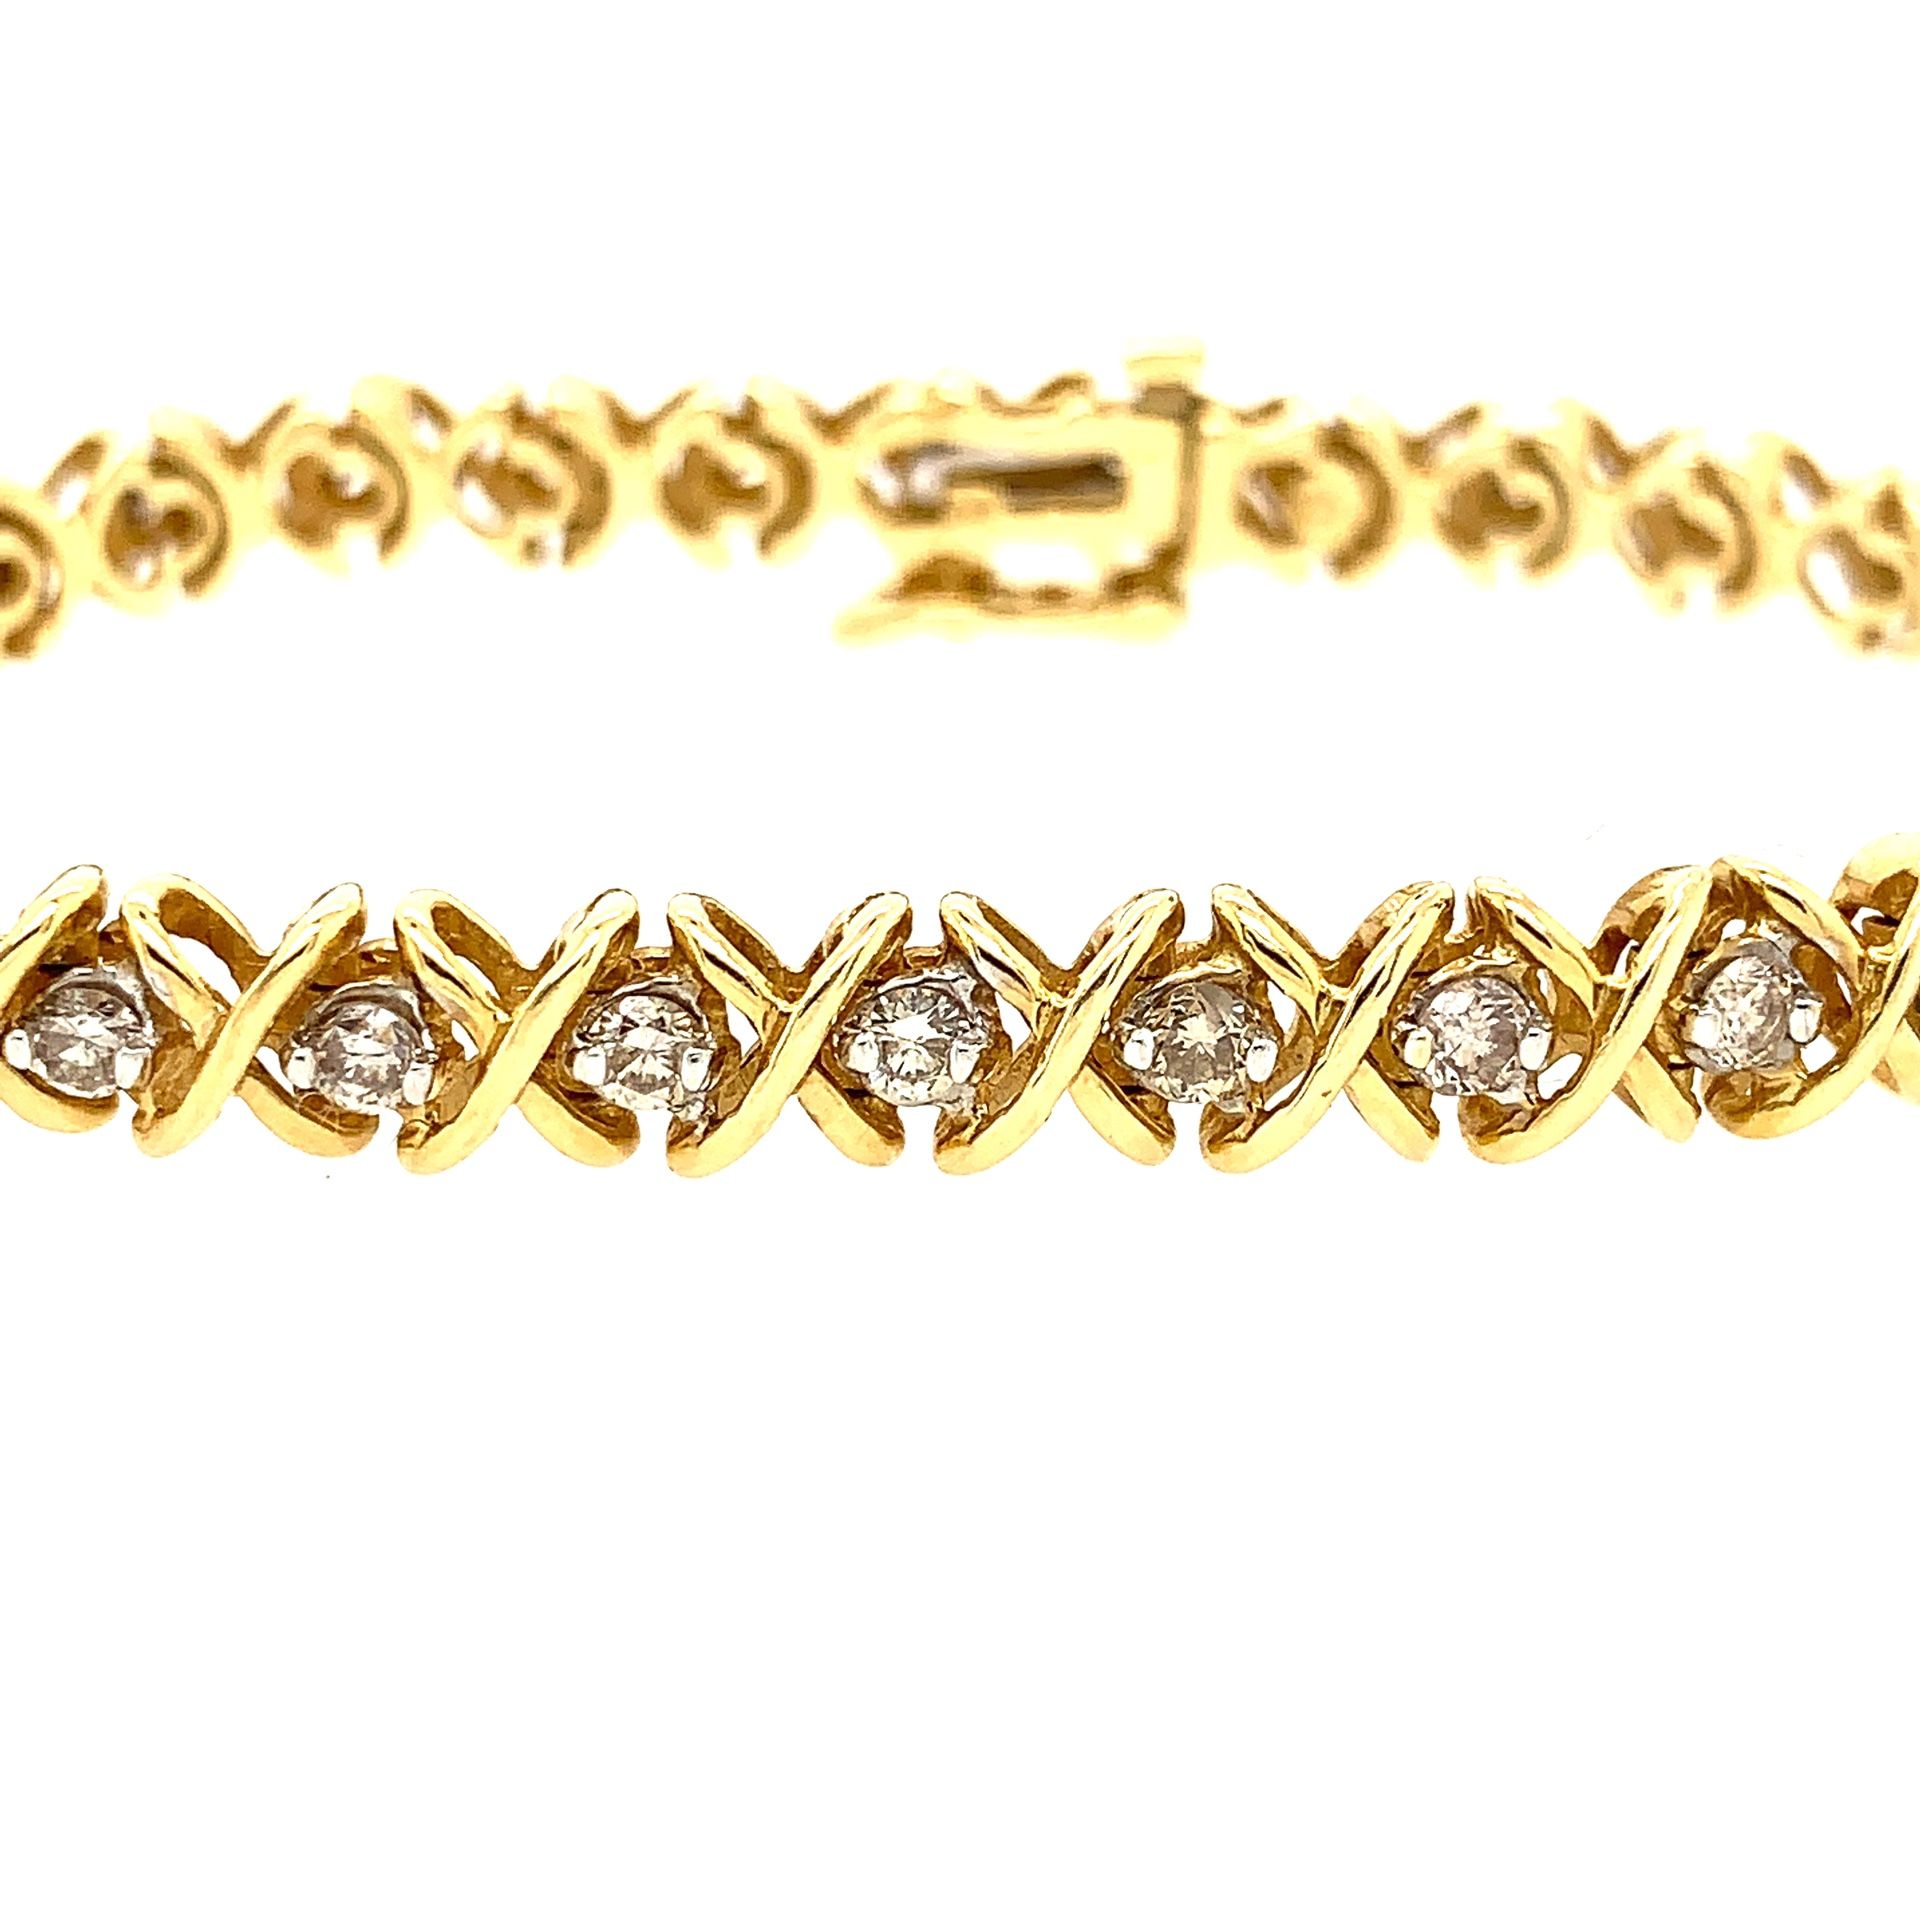 14k diamond tennis bracelet (2 tcw)